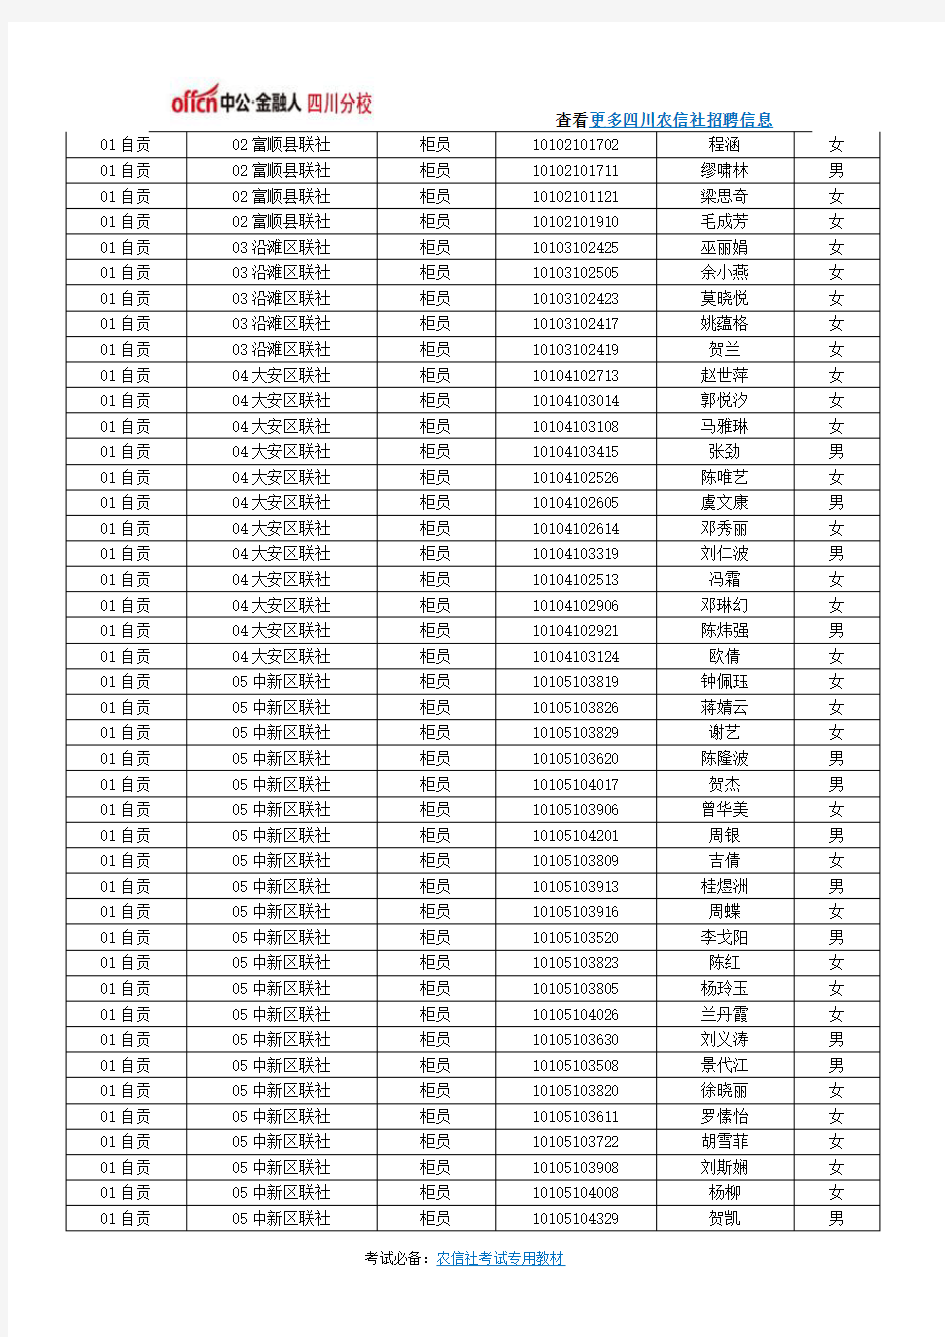 2015年四川农信社社会招聘面试入围人员名单(柜员岗位)